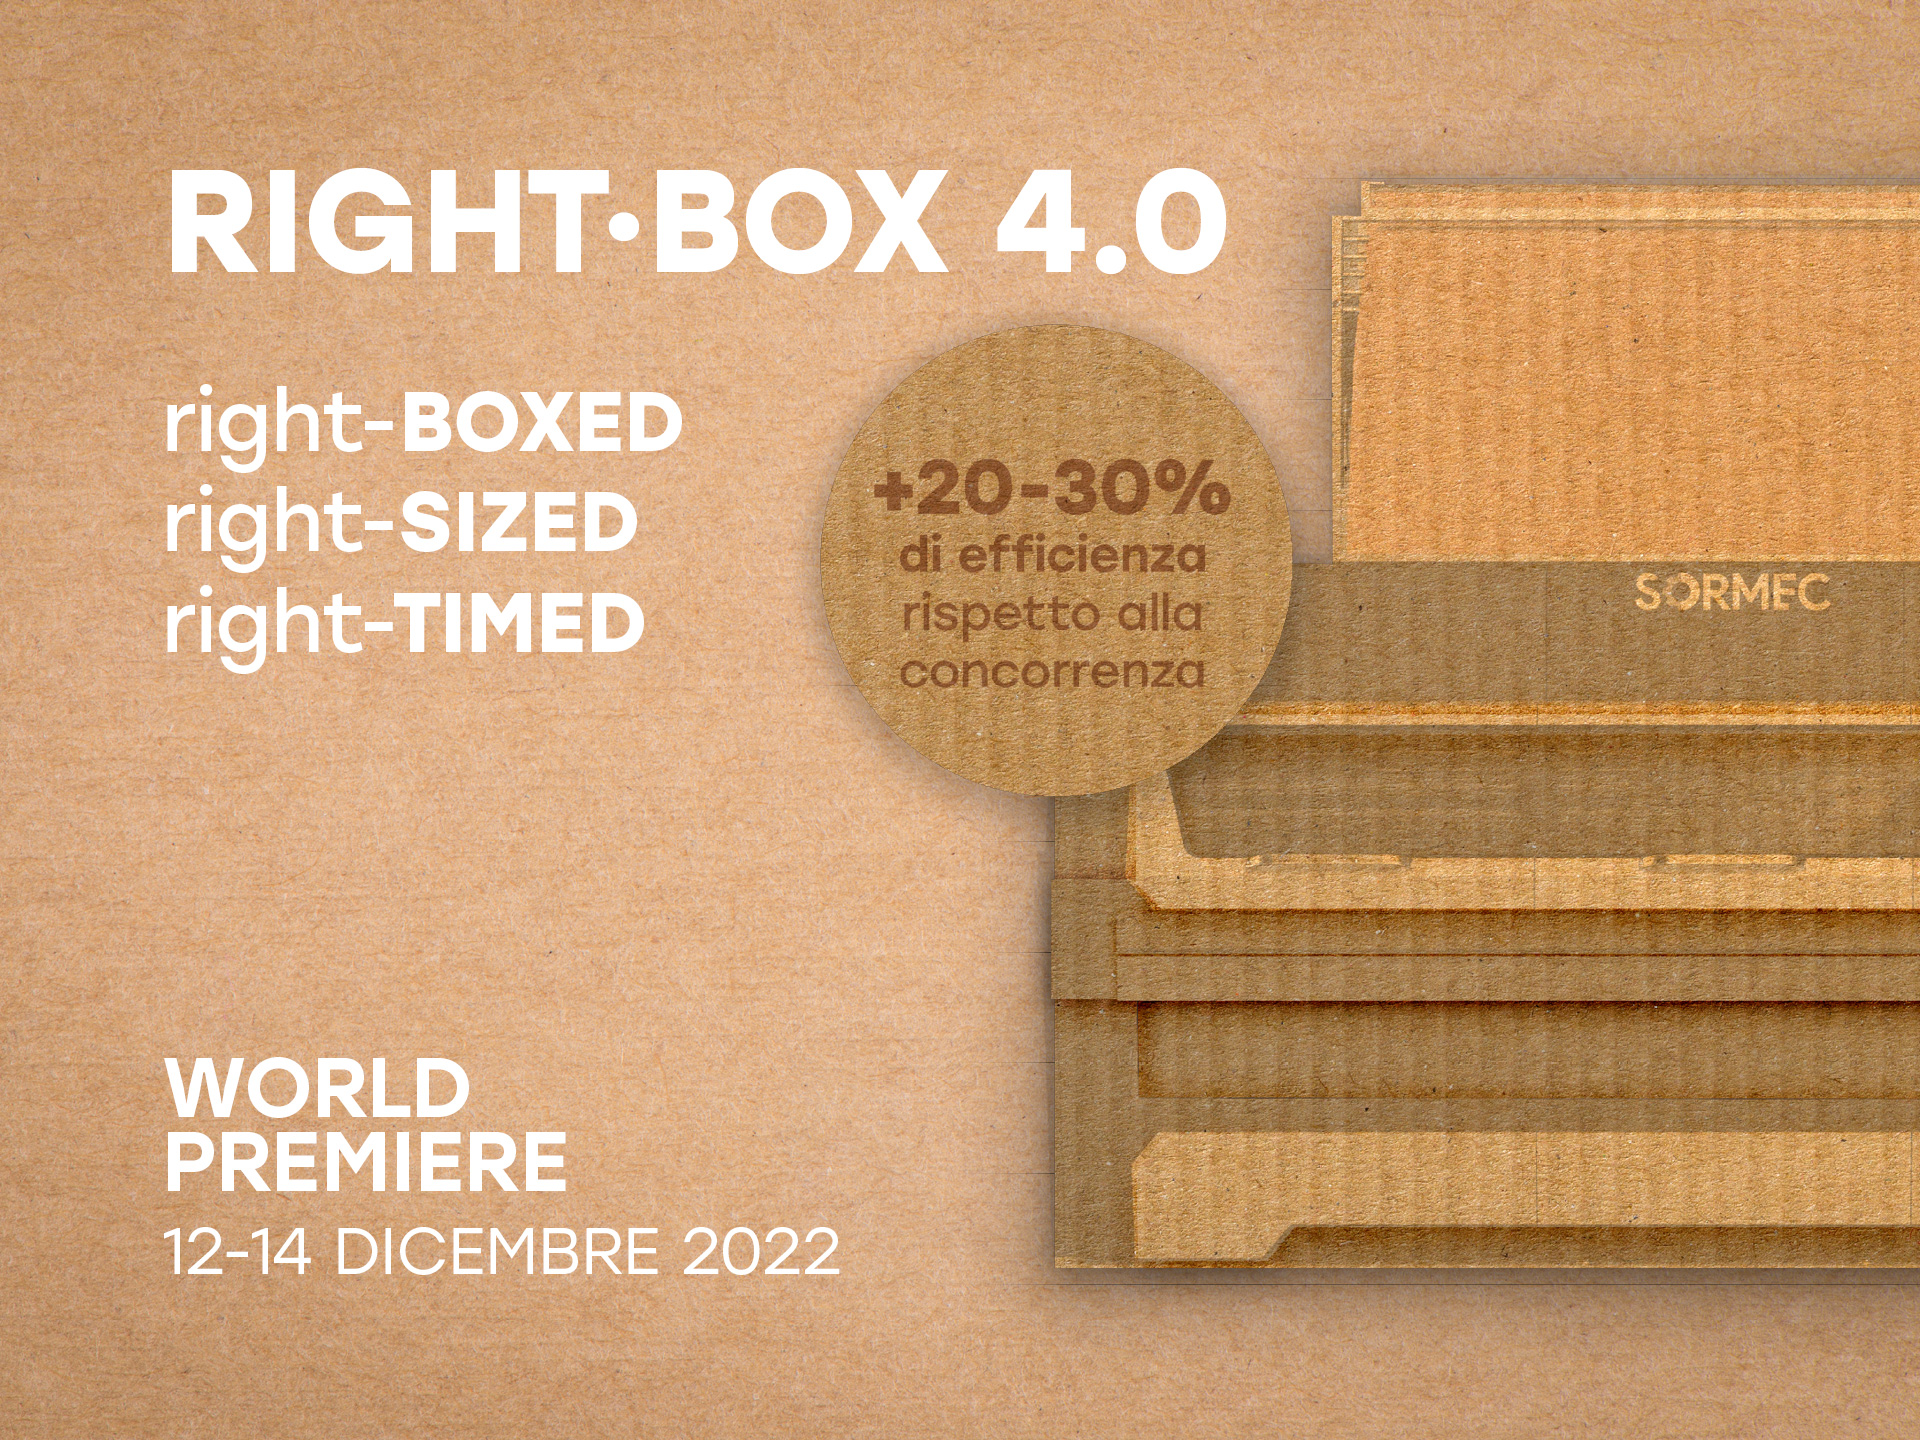 RIGHT-BOX 4.0: +20-30% Effizienz im Vergleich zum Wettbewerb